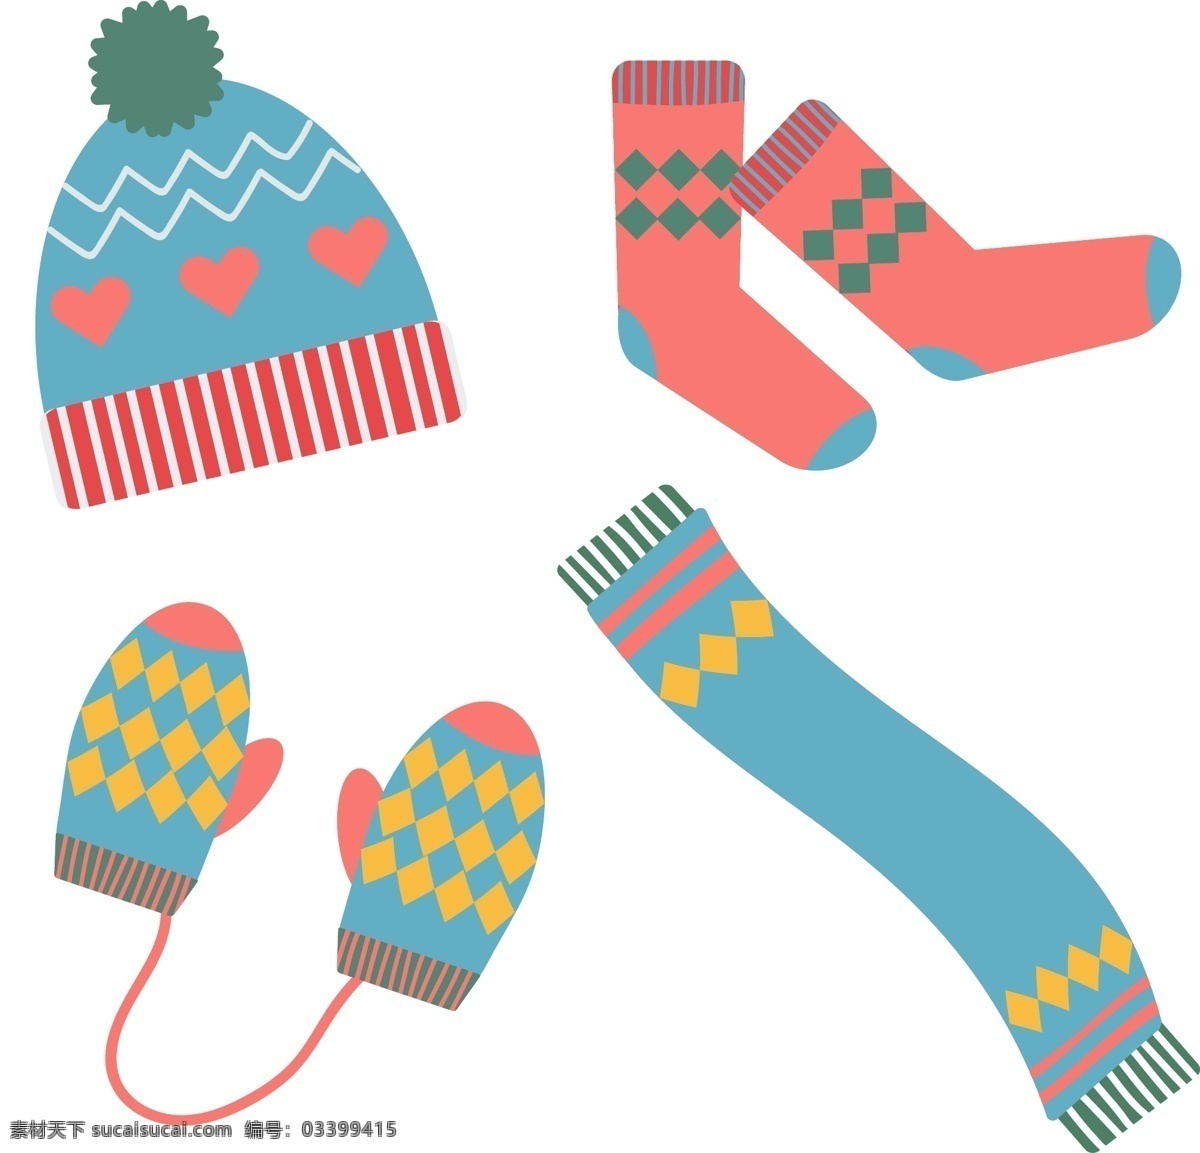 一个 简单 冬季 保温 元素 插图 开襟 羊毛衫 冬天 可爱 帽子 温暖 技巧 服装 袜子 材料 如果 留意